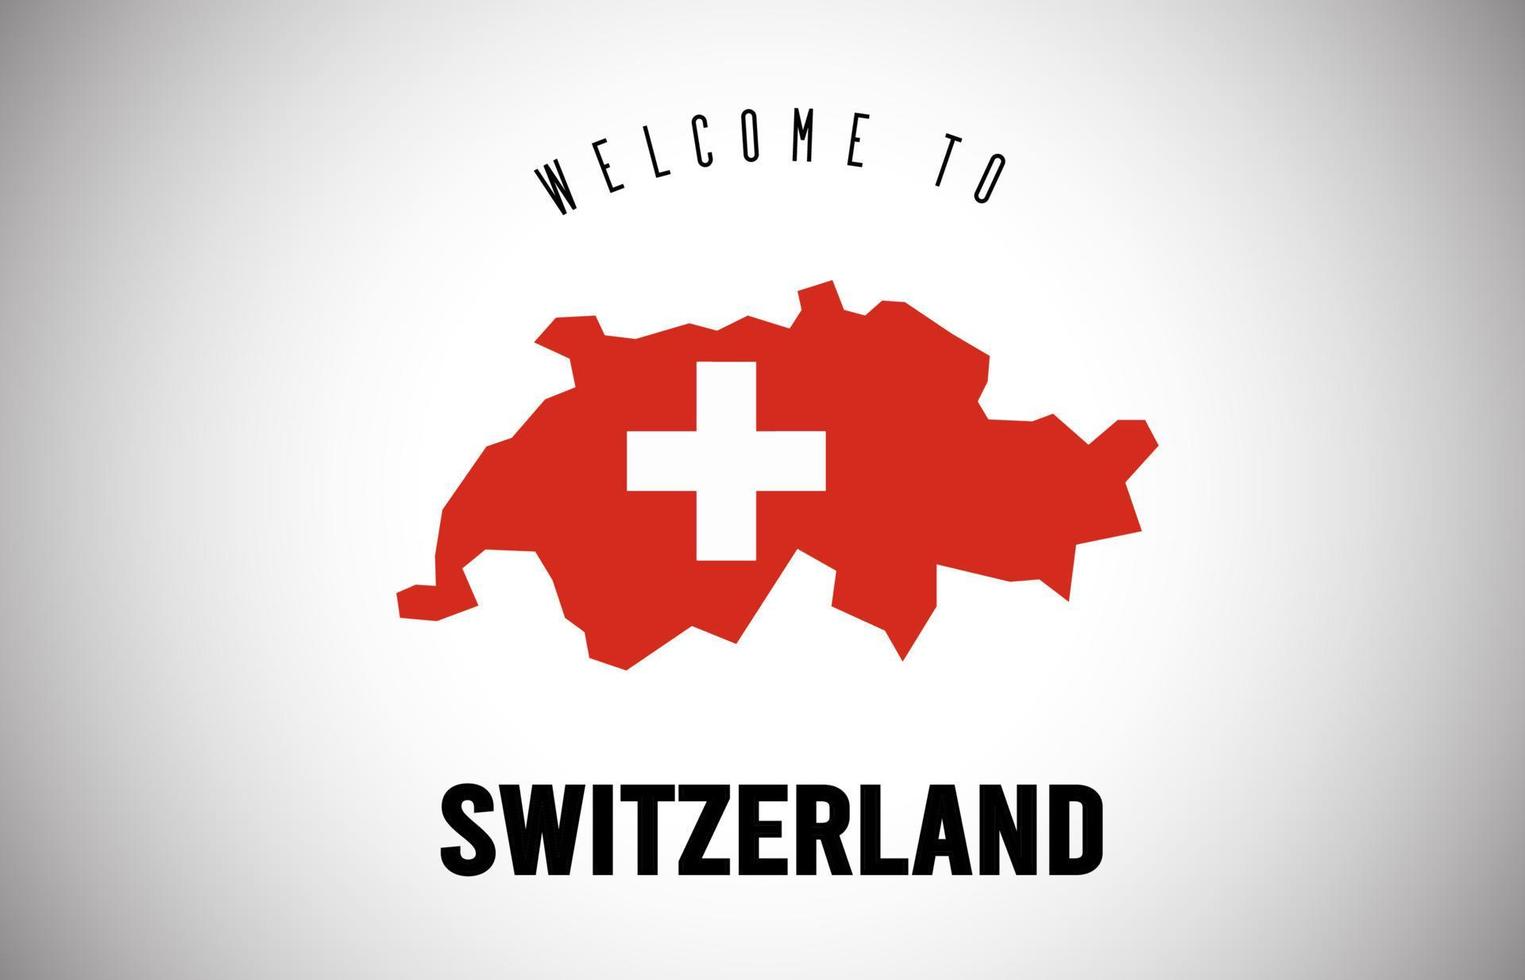 schweiz välkommen till text och landsflagga inuti landsgränskarta vektordesign. vektor